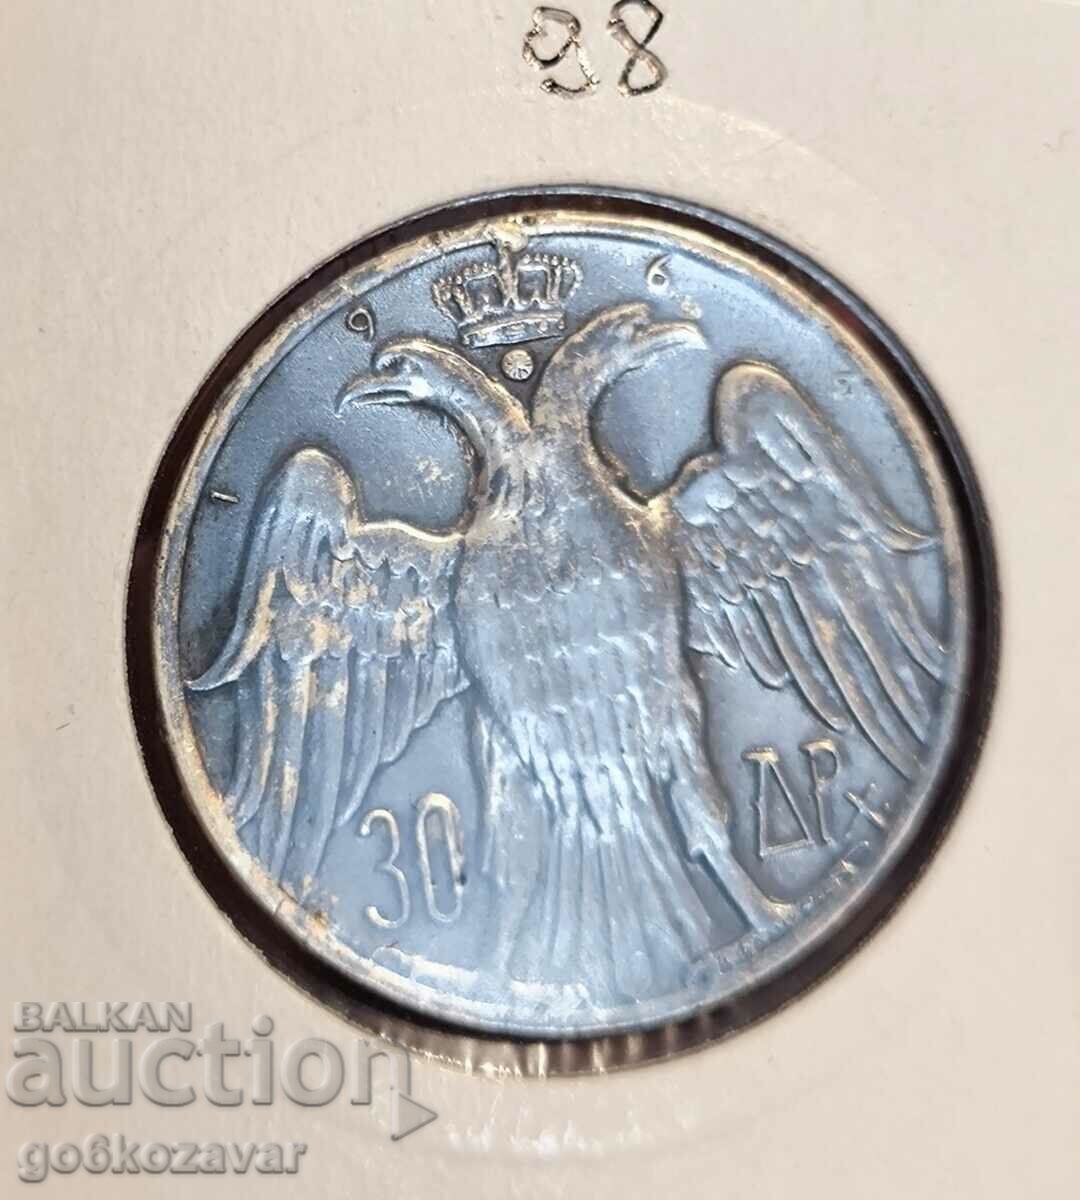 Greece 30 drachmas 1964 Silver UNC Patina!